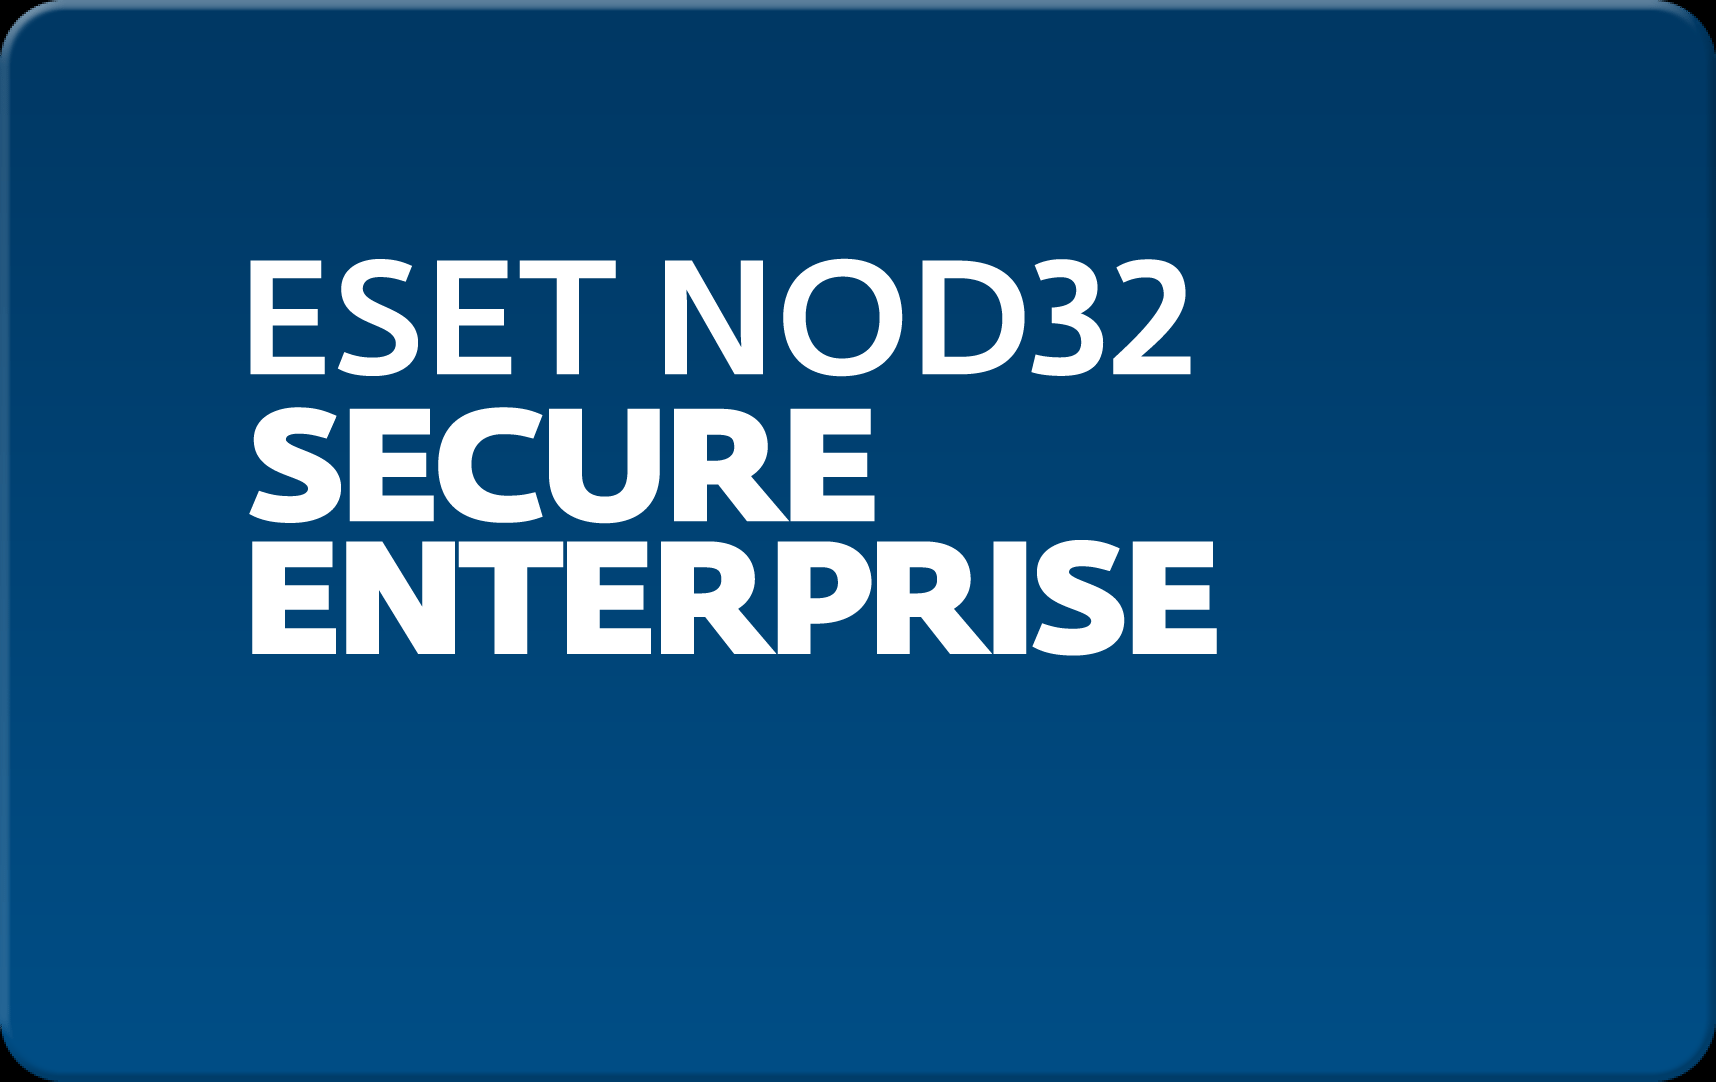        Eset NOD32 Secure Enterprise  167 